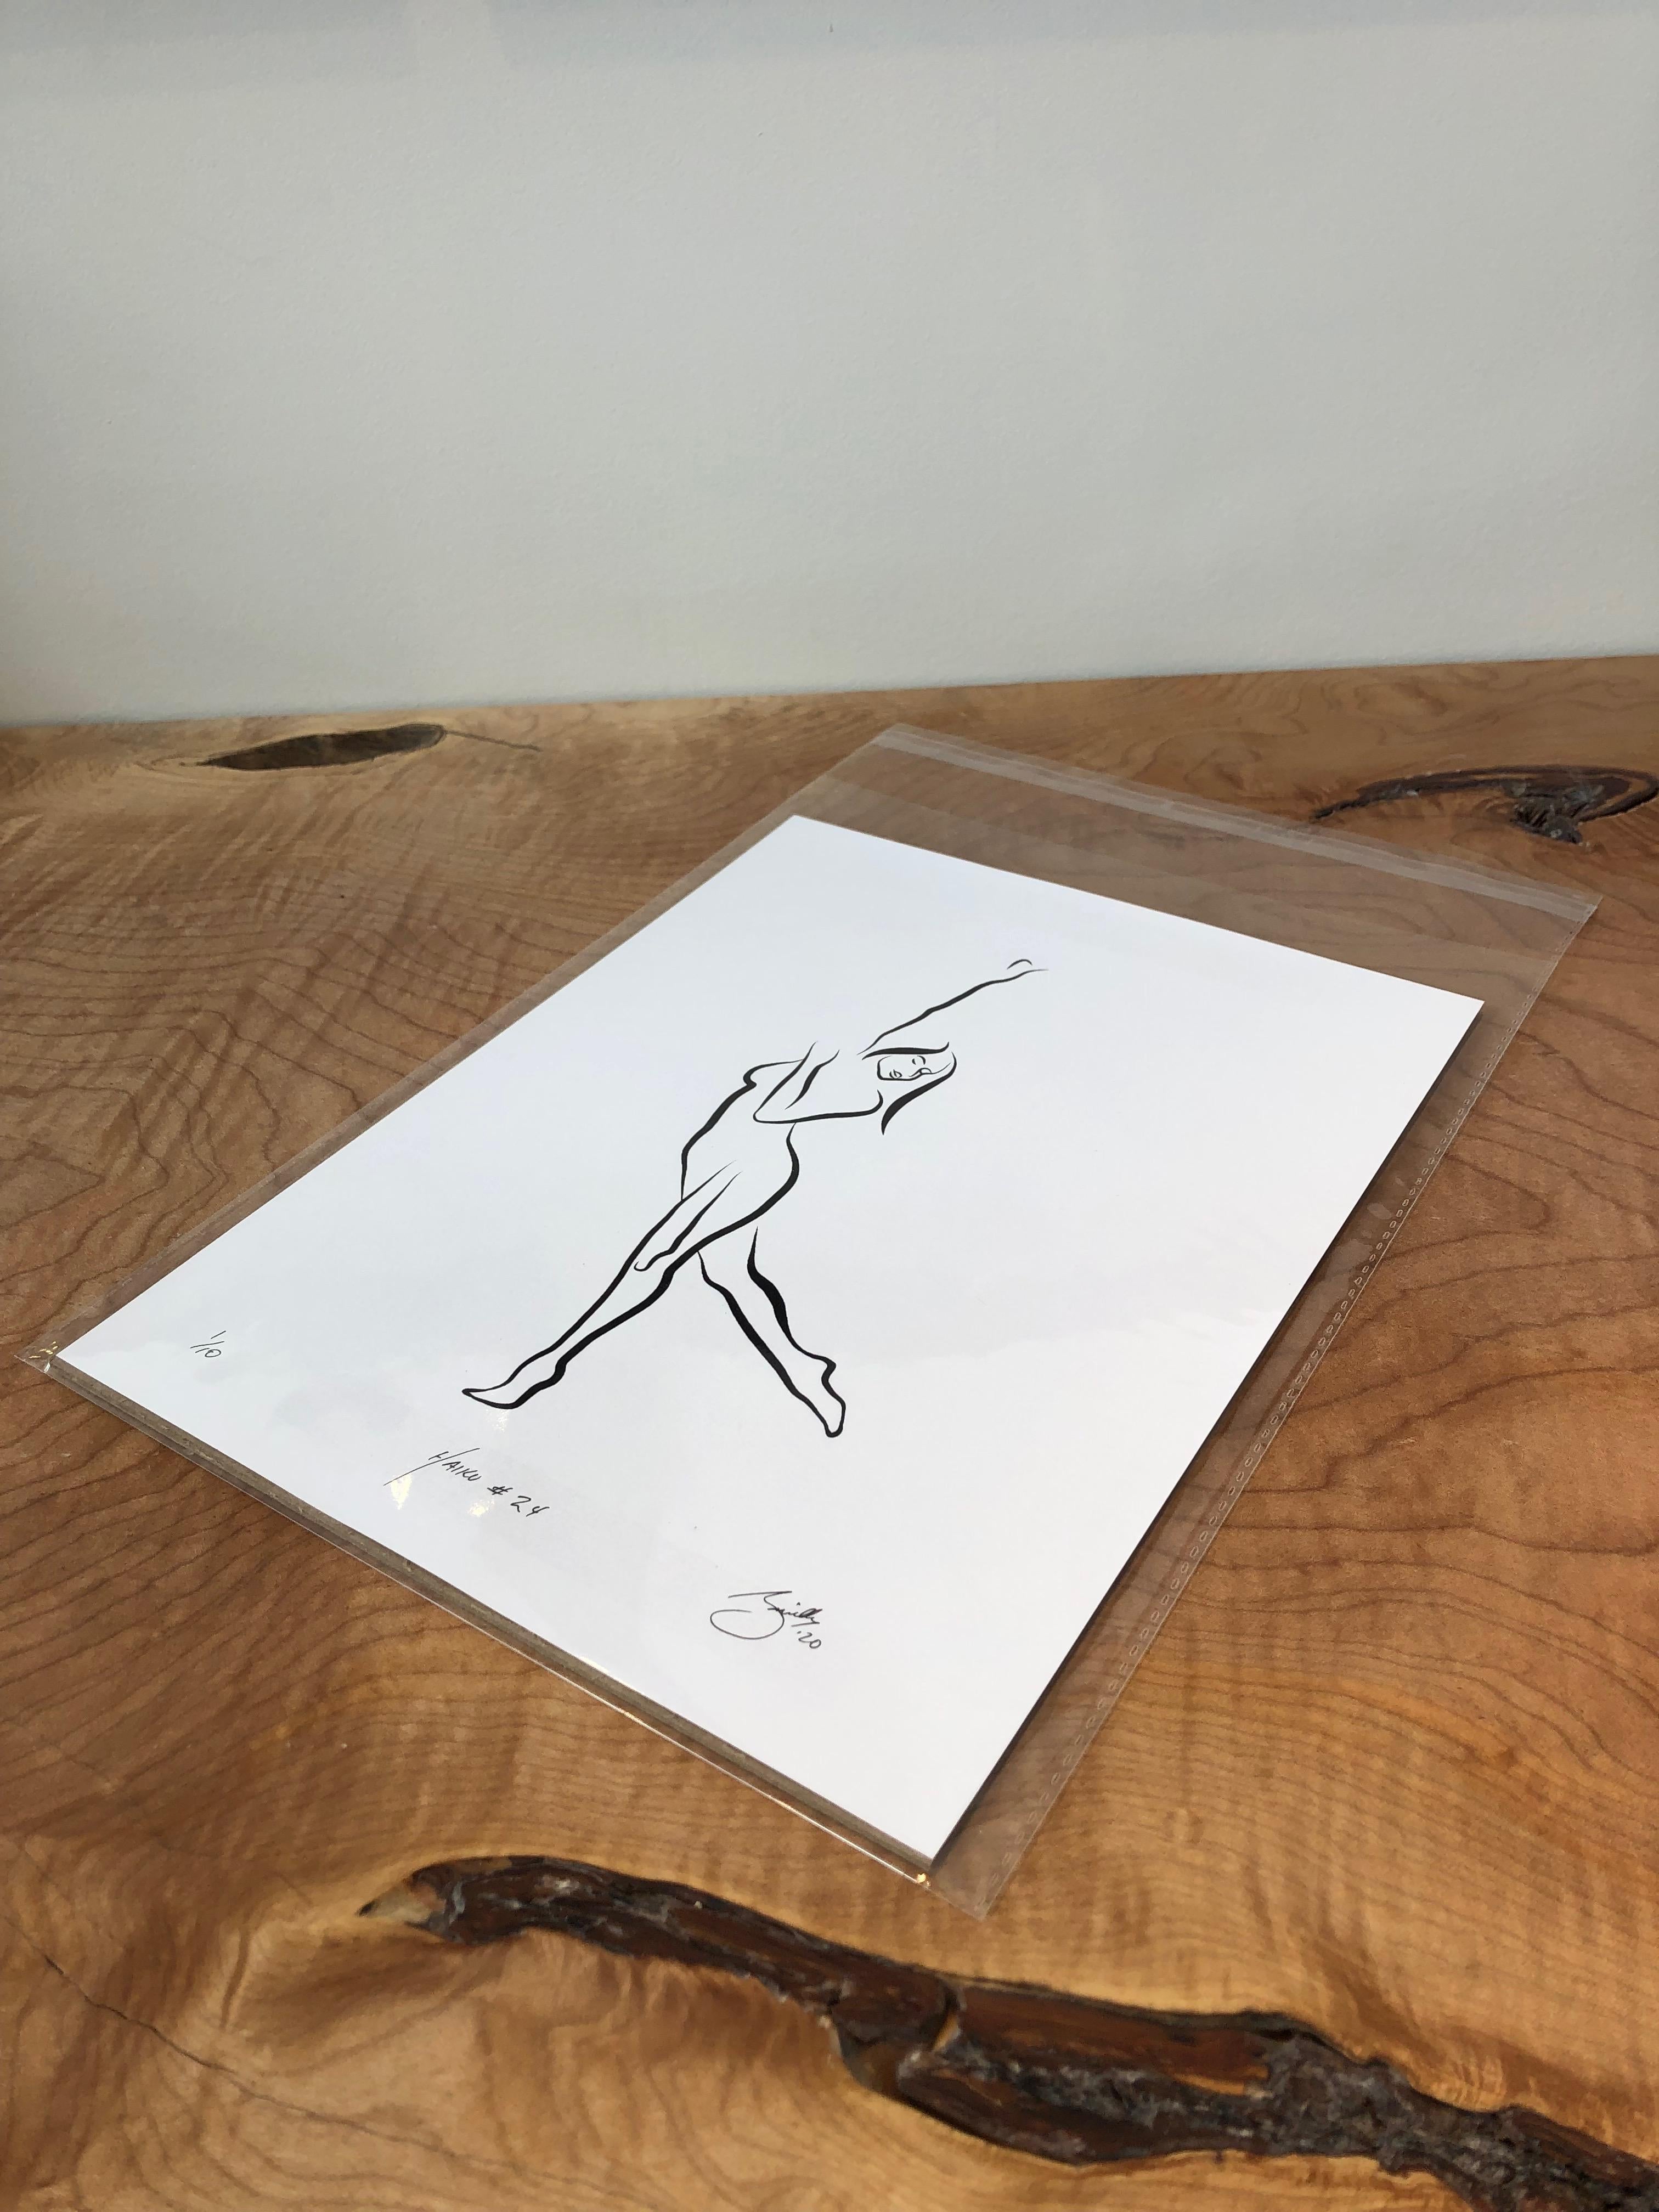 Haiku n° 24, 1/50 - Drawing numérique représentant une femme nue dansant, bras levés - Print de Michael Binkley